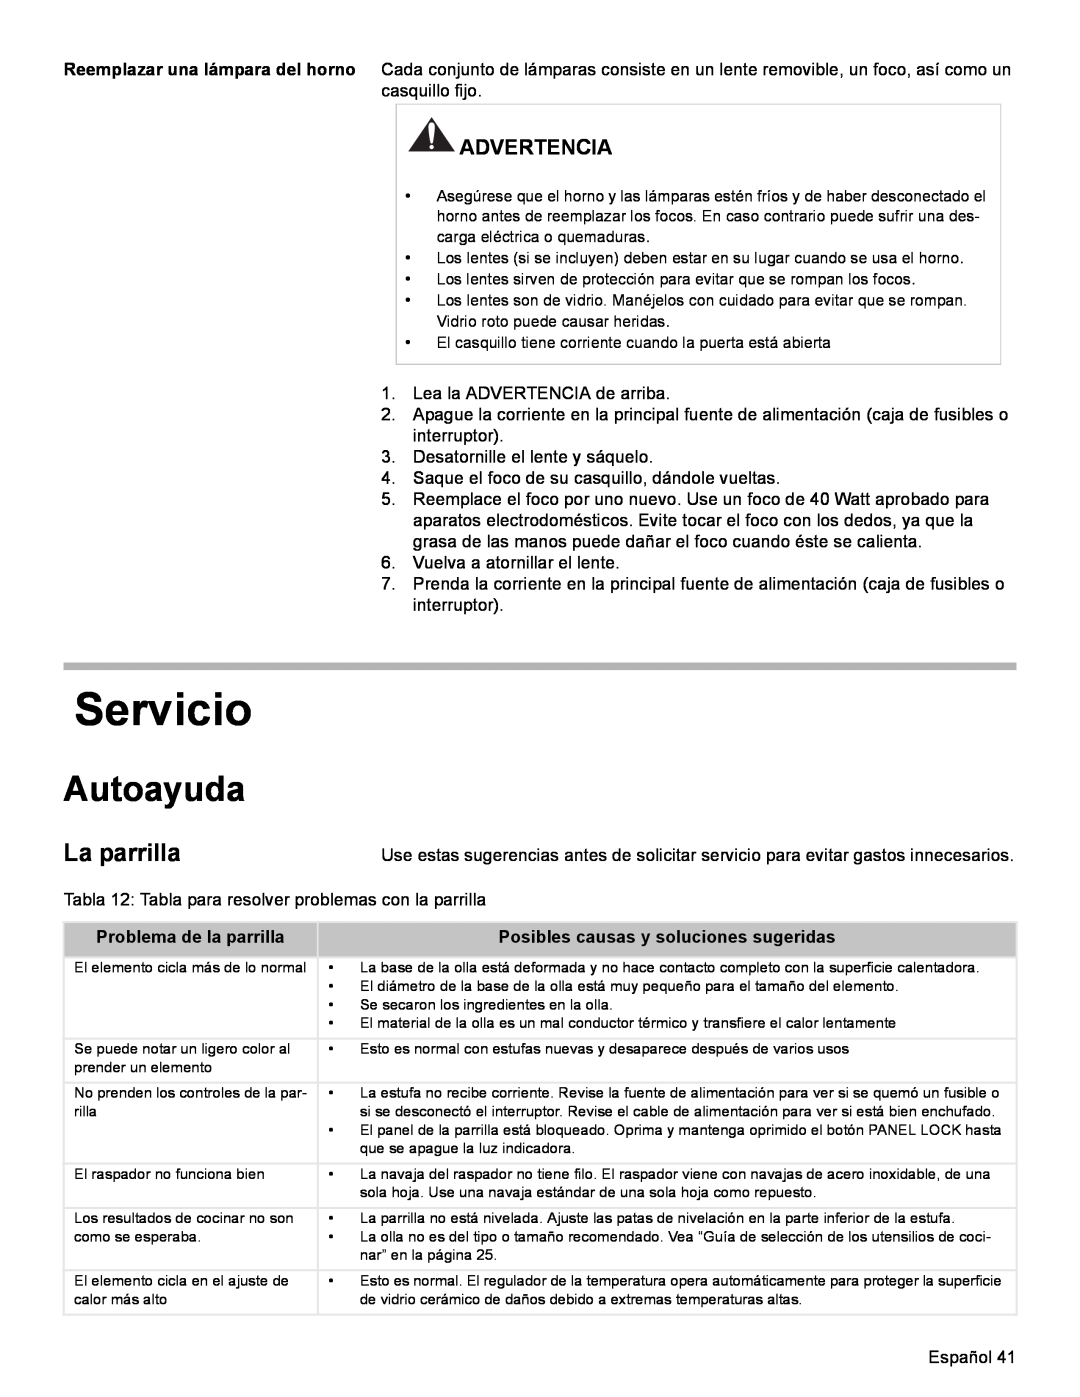 Bosch Appliances HES7282U manual Servicio, Autoayuda, La parrilla, Advertencia, Problema de la parrilla 